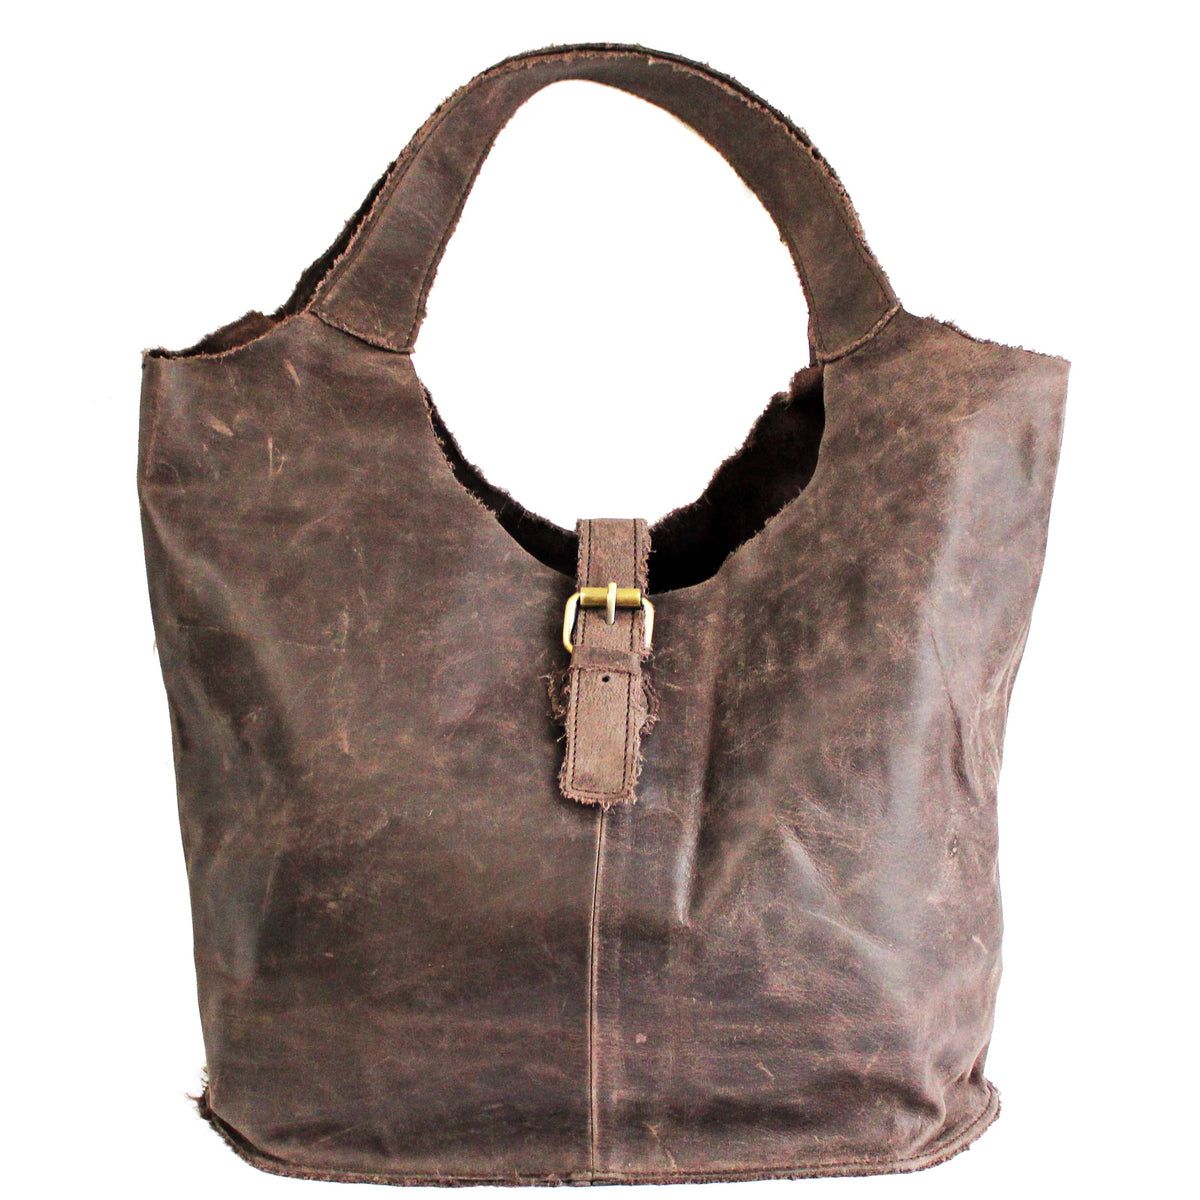 Buy BROWN Large Tote OVERSIZE SHOPPER Bag Cognac Leather Shoulder Bag  Shopping Bag Large Everyday Purse Travel Bag Big Tote Bag Online in India -  Etsy